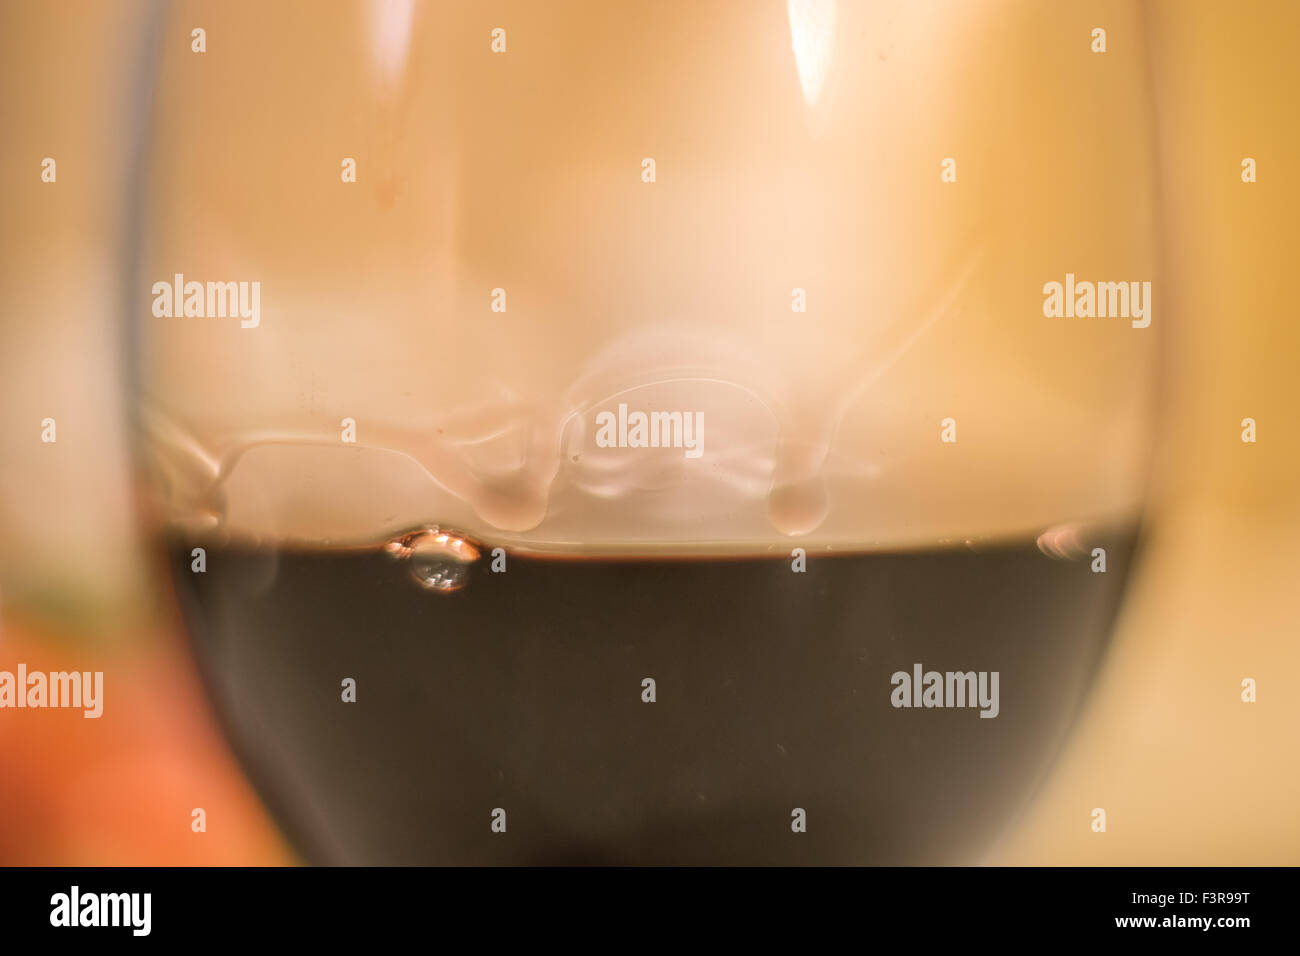 Coupe de vin avec les gouttelettes d'eau formé par la tension de surface de l'alcool Banque D'Images